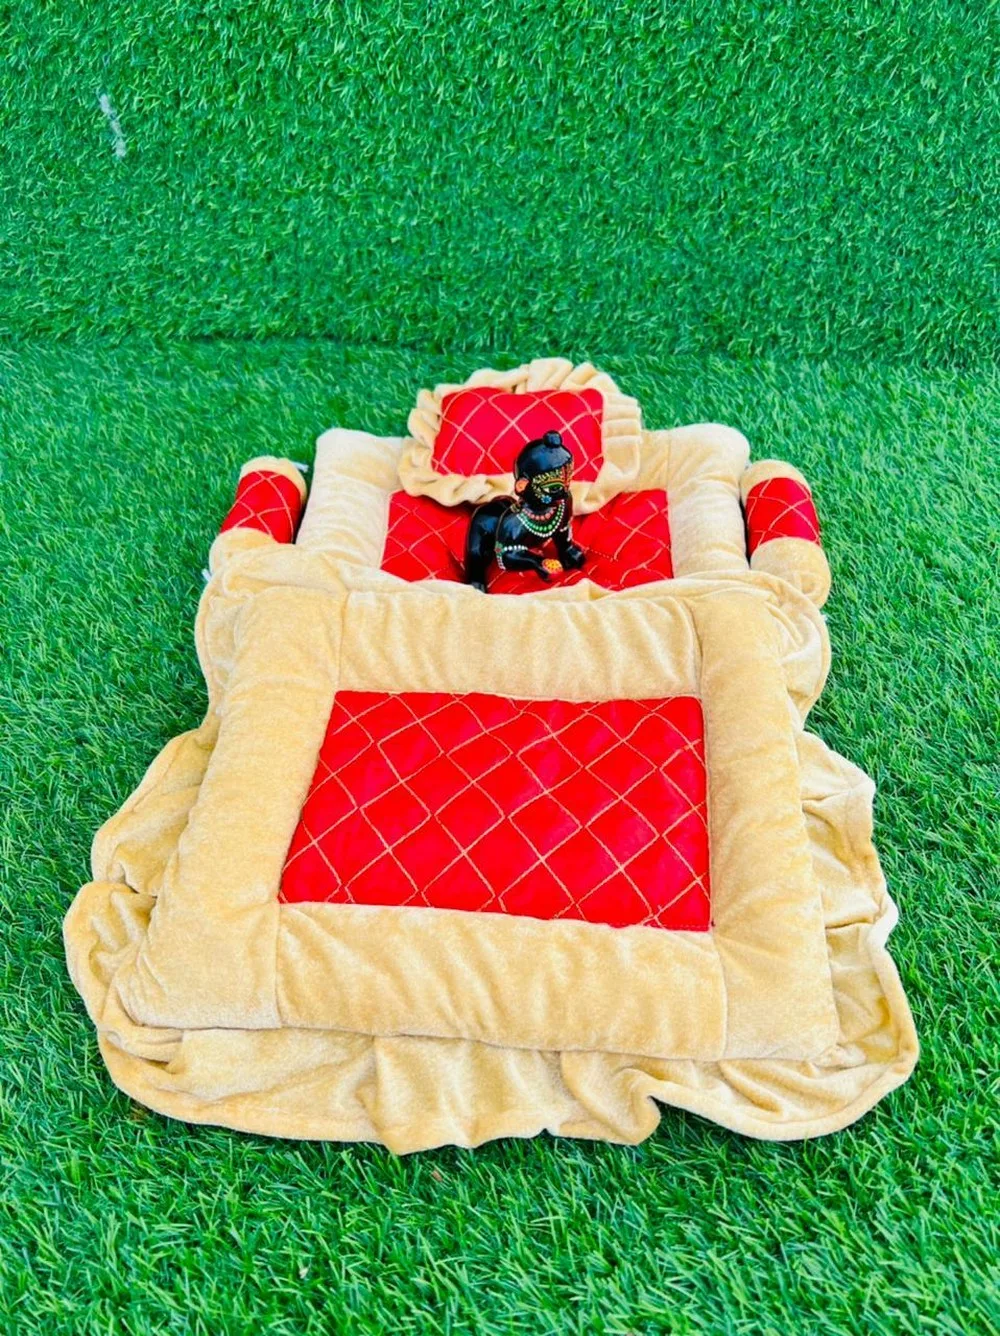 Laddu Gopal bedding set velvet, Gadda, 
Booster, Pillow, golden, red